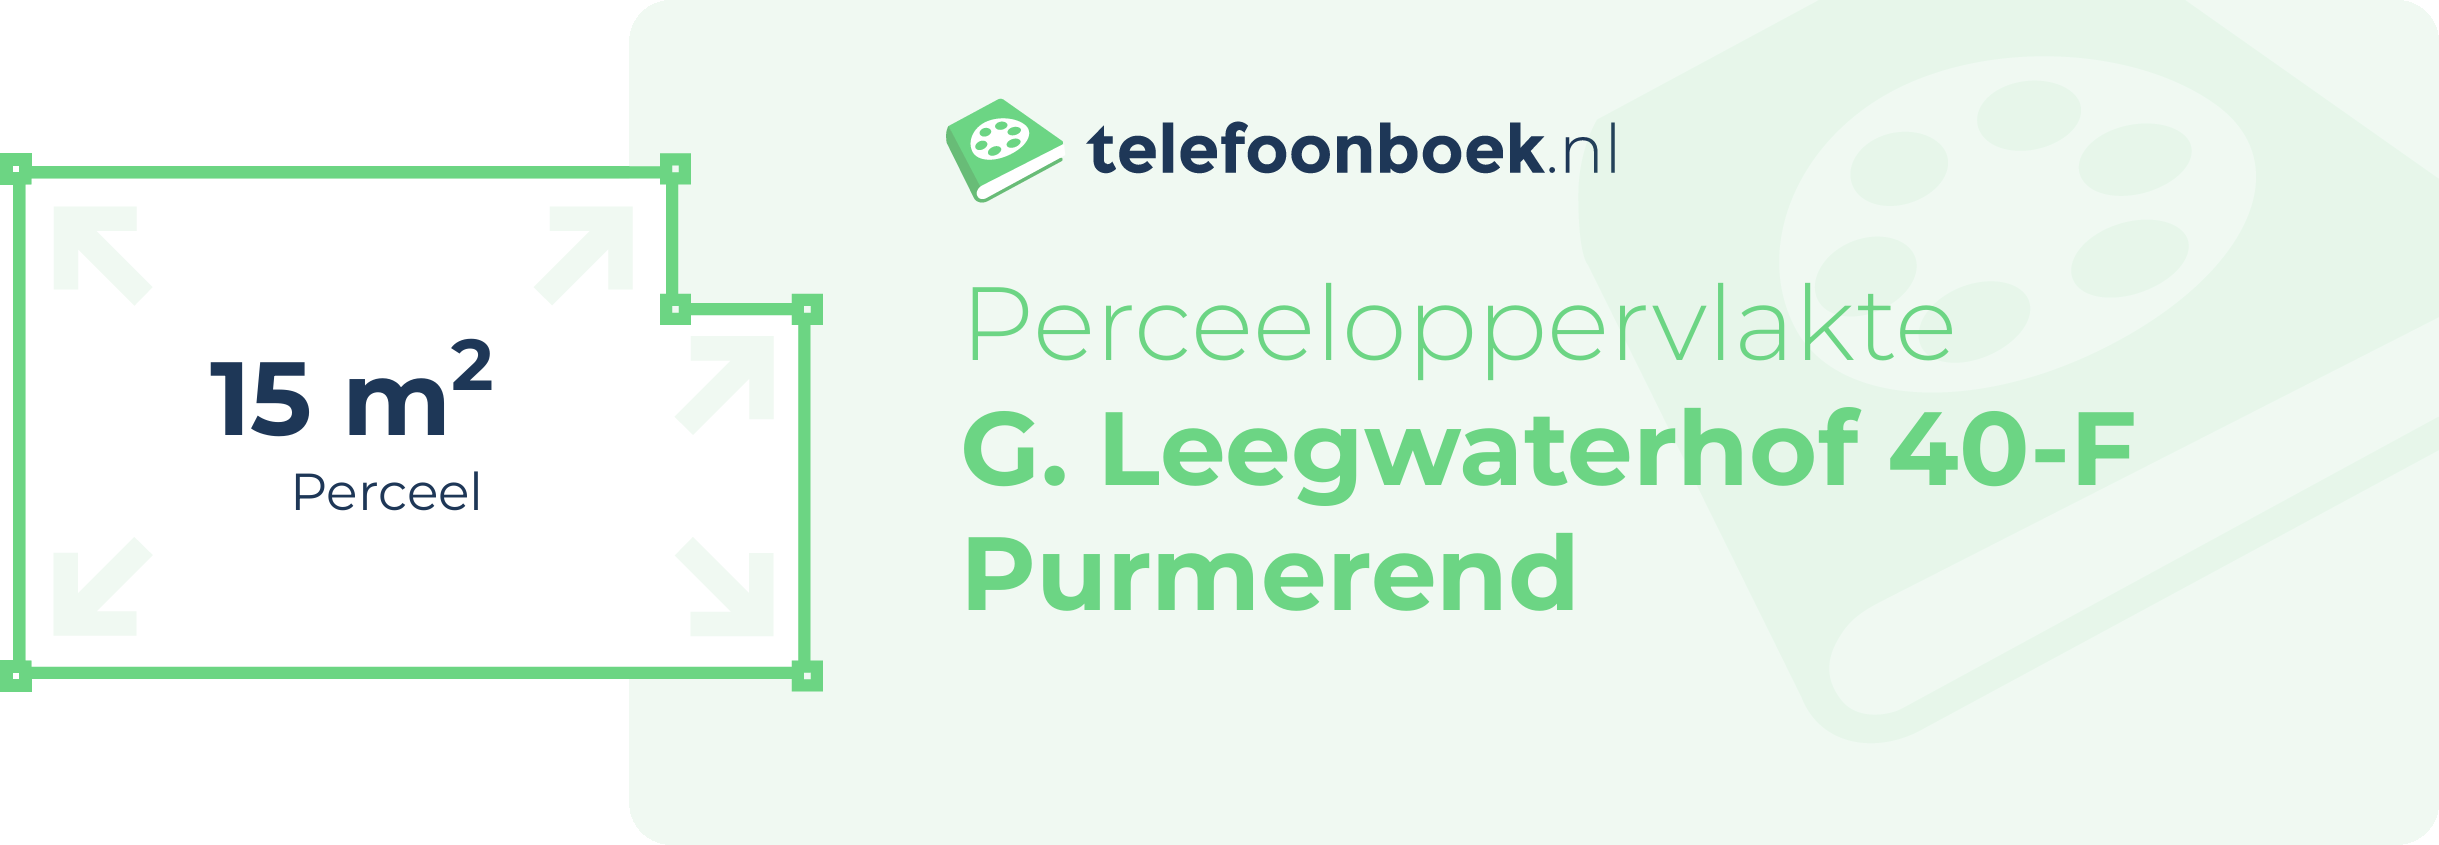 Perceeloppervlakte G. Leegwaterhof 40-F Purmerend